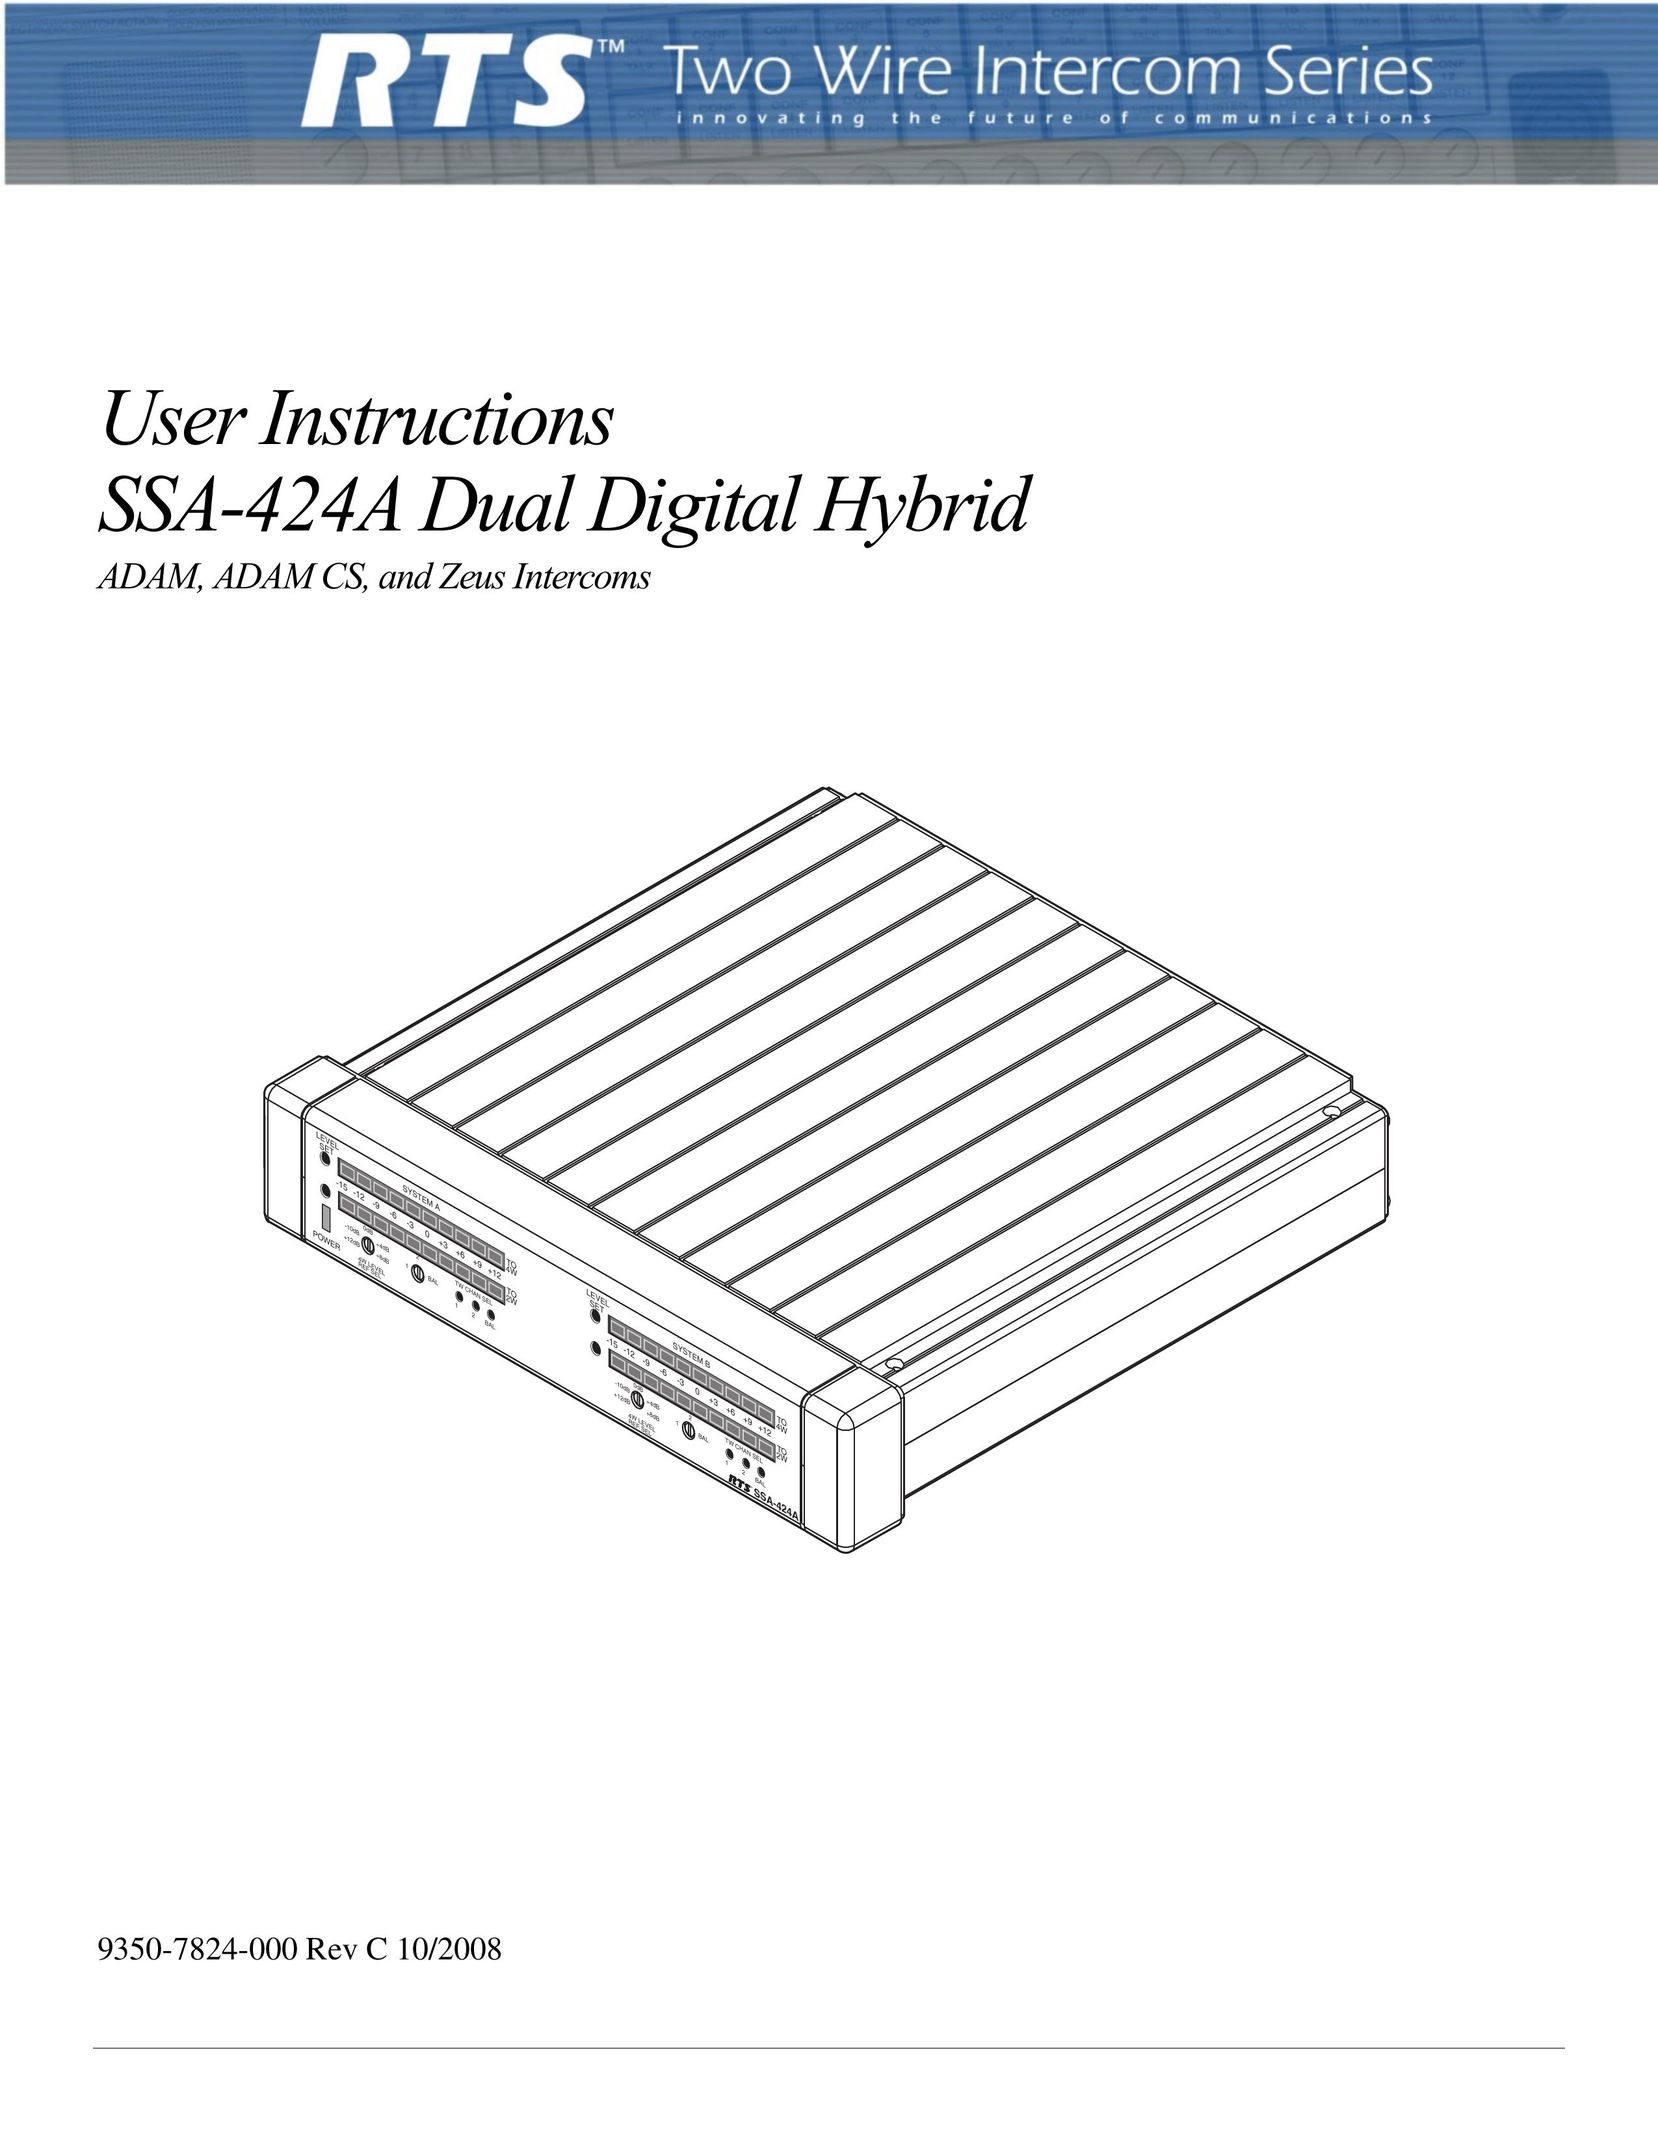 RTS SSA-424A Intercom System User Manual